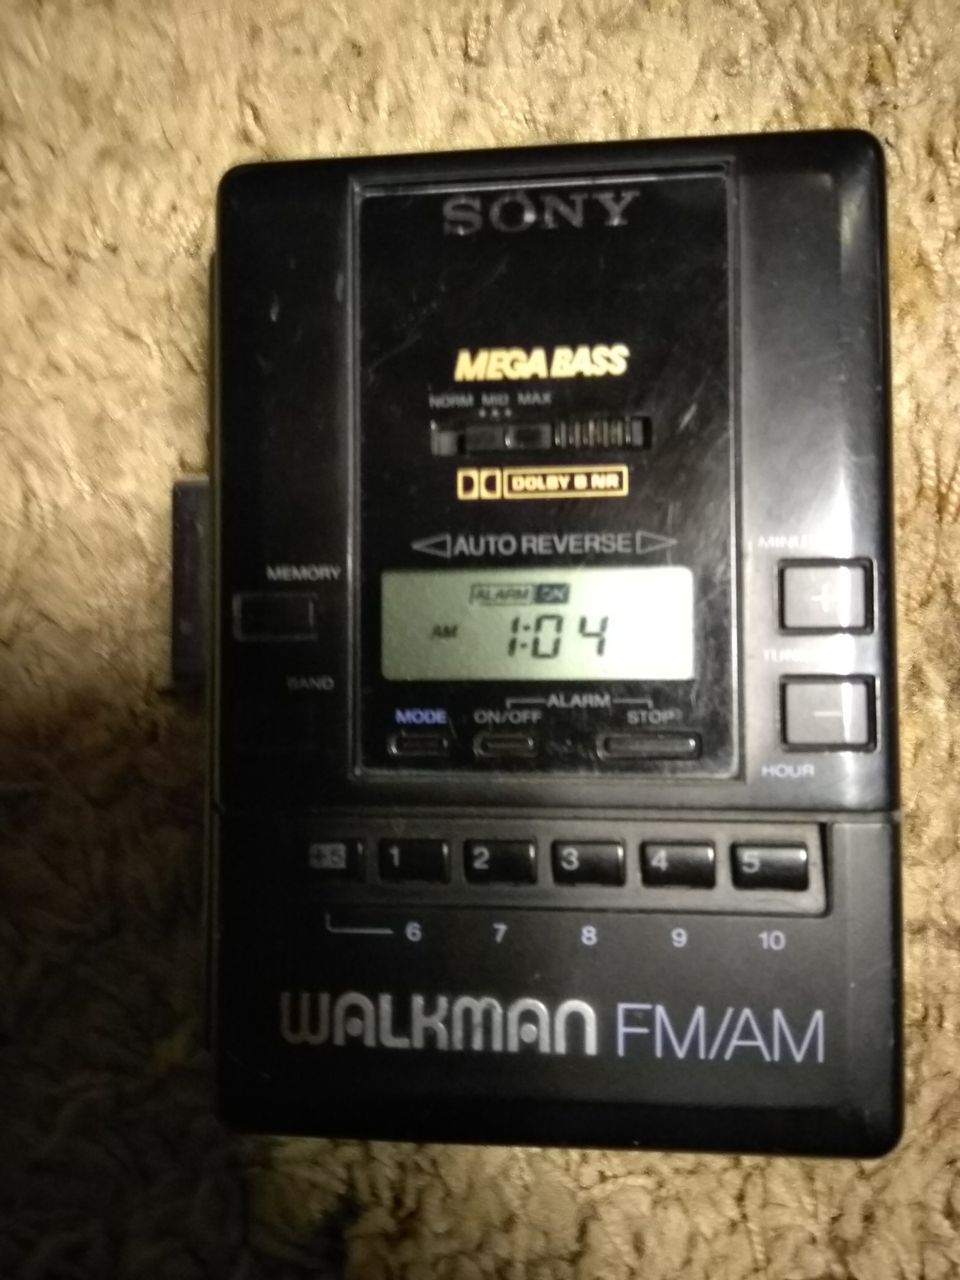 Sony Walkman FM/AM